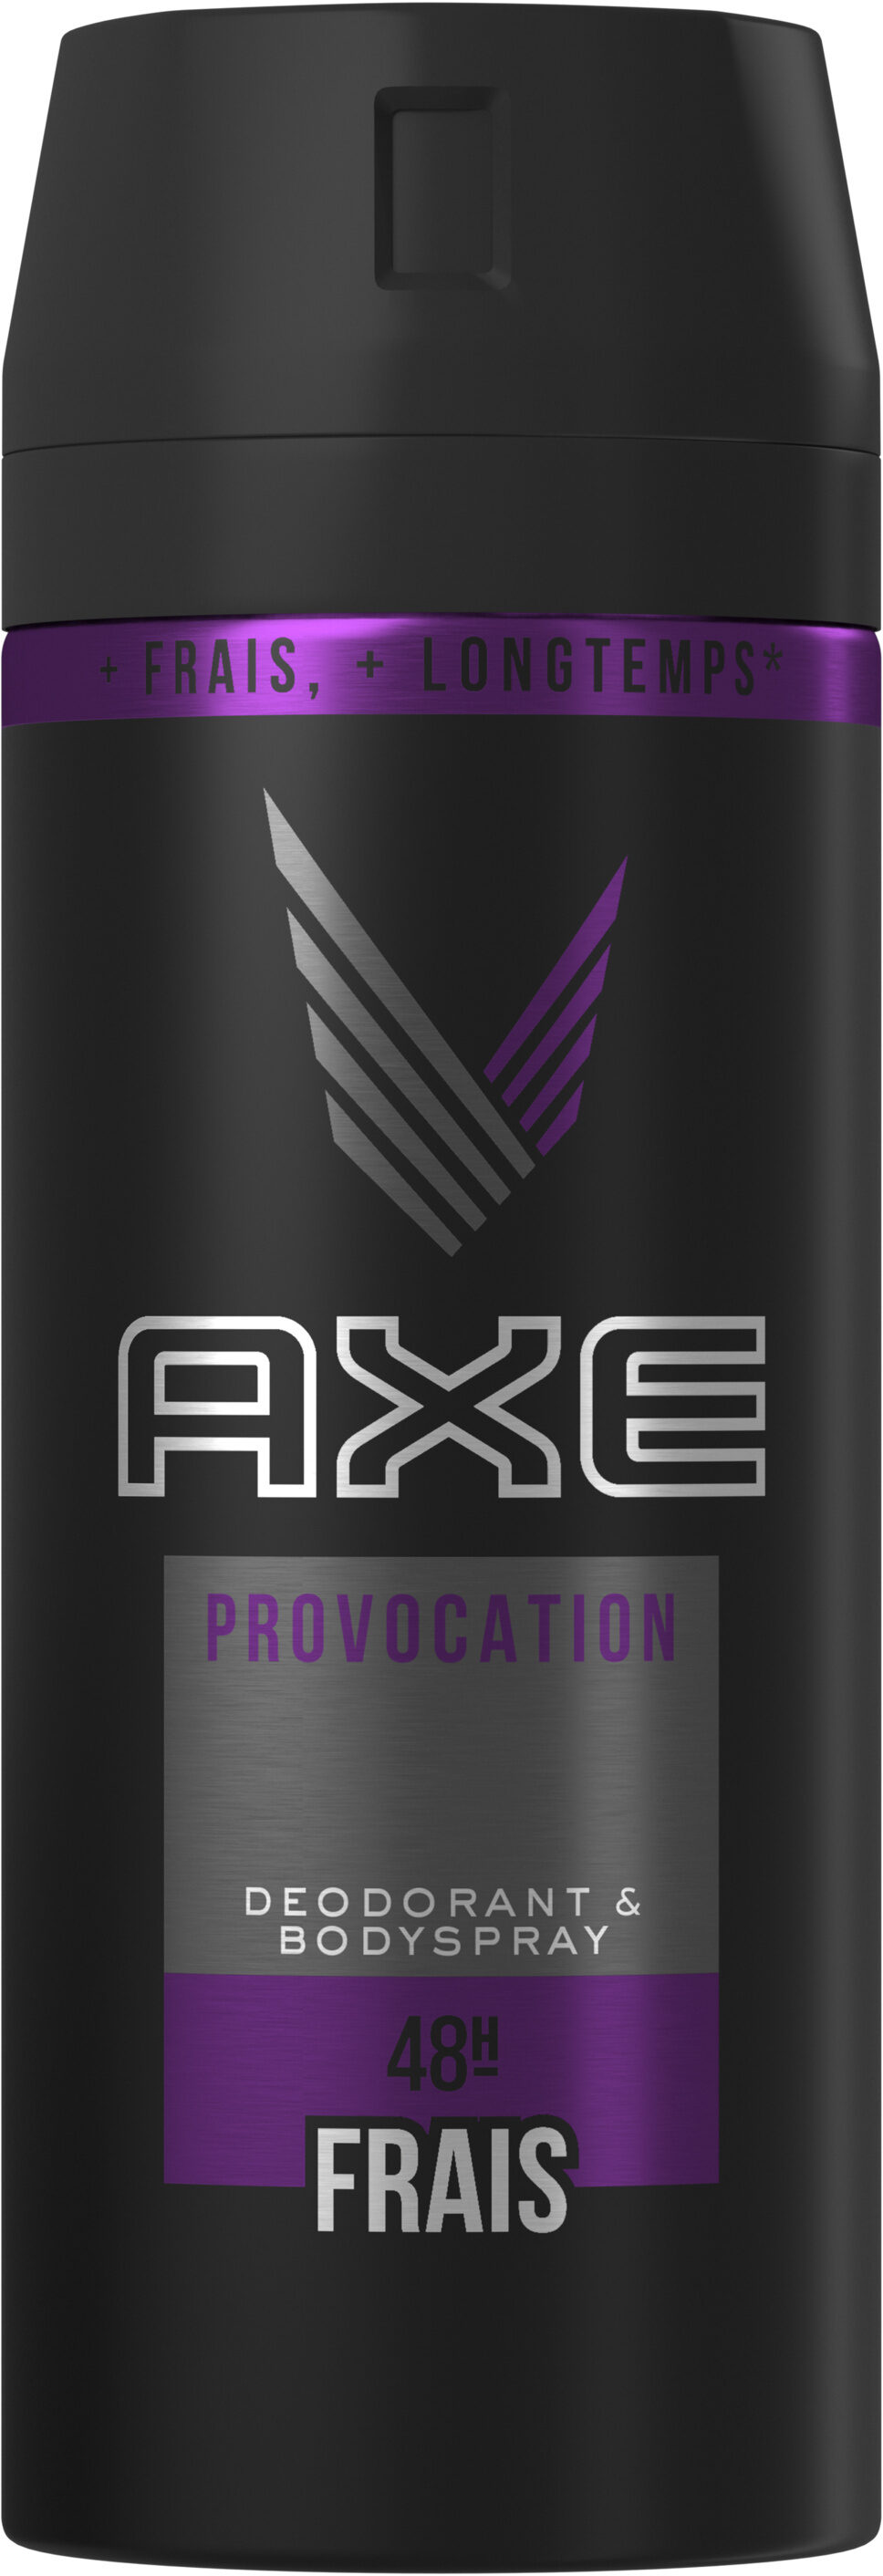 Axe Déodorant Bodyspray Homme Provocation 48h Non-Stop Frais 150ml - Produkto - fr